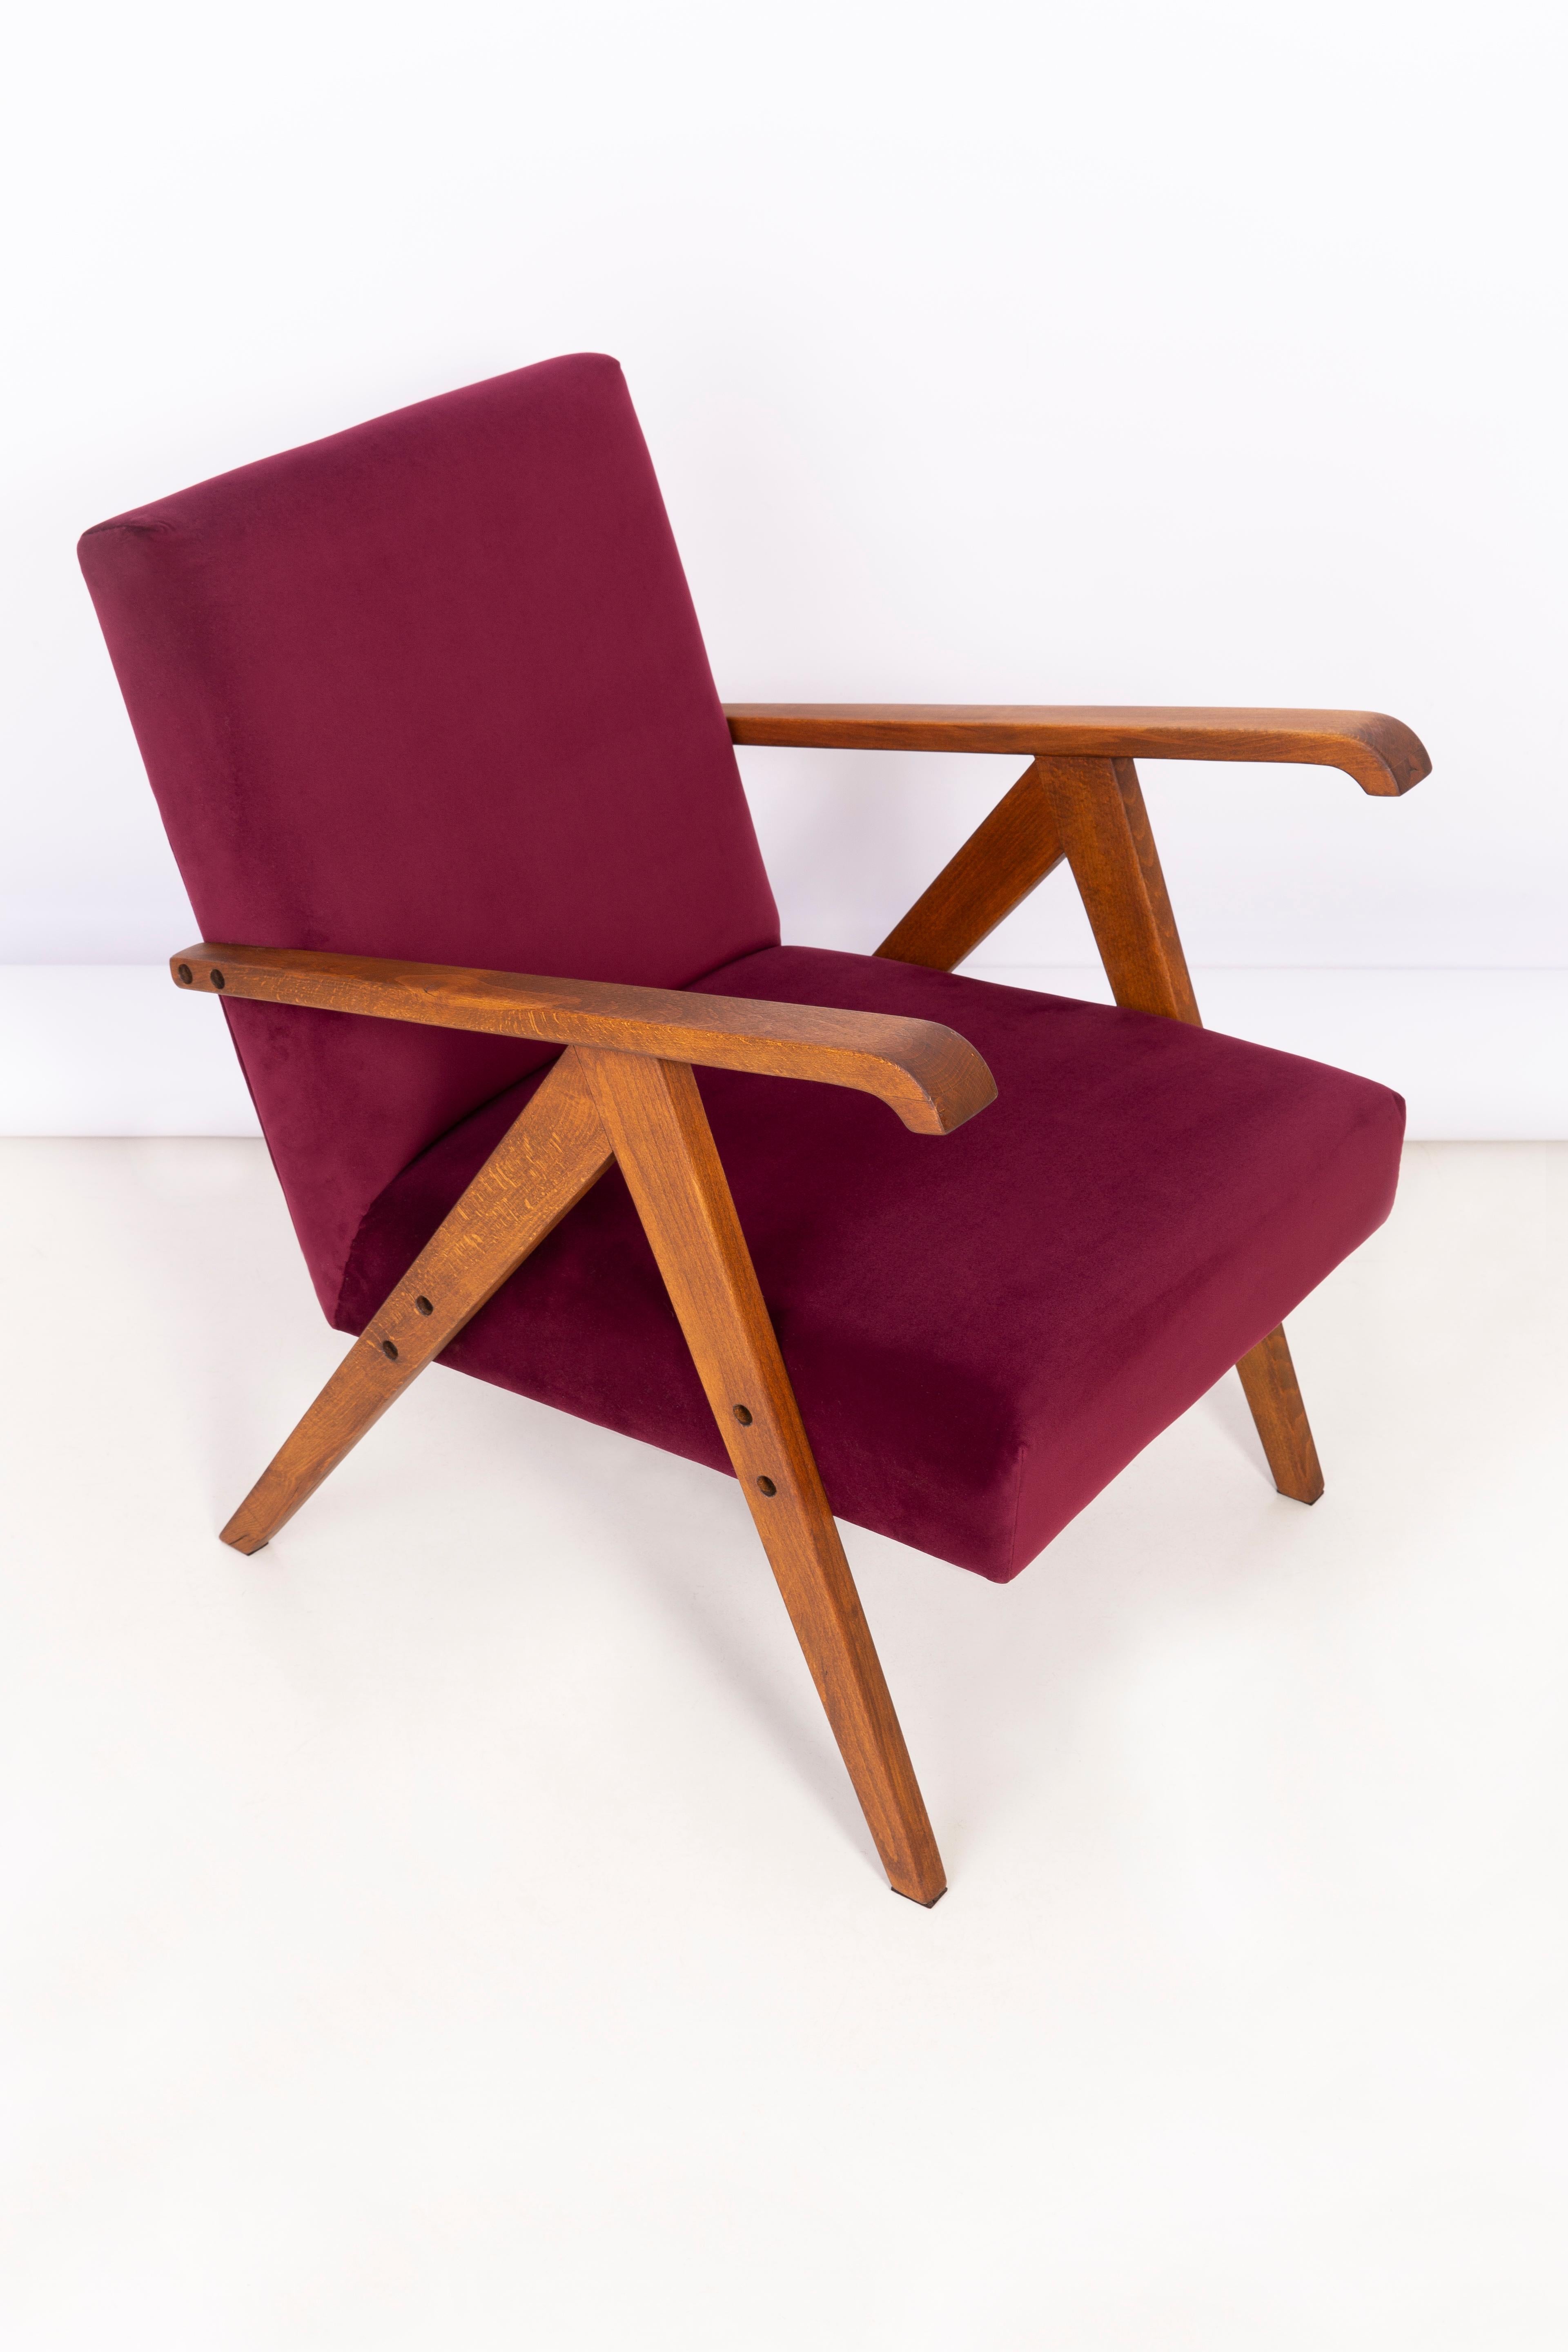 Un beau fauteuil restauré, conçu par Henryk Lis. Meubles après une rénovation complète de la menuiserie et de la tapisserie. Le tissu, qui recouvre un dossier et une assise, est un revêtement en velours bordeaux de haute qualité (couleur 2932). Le